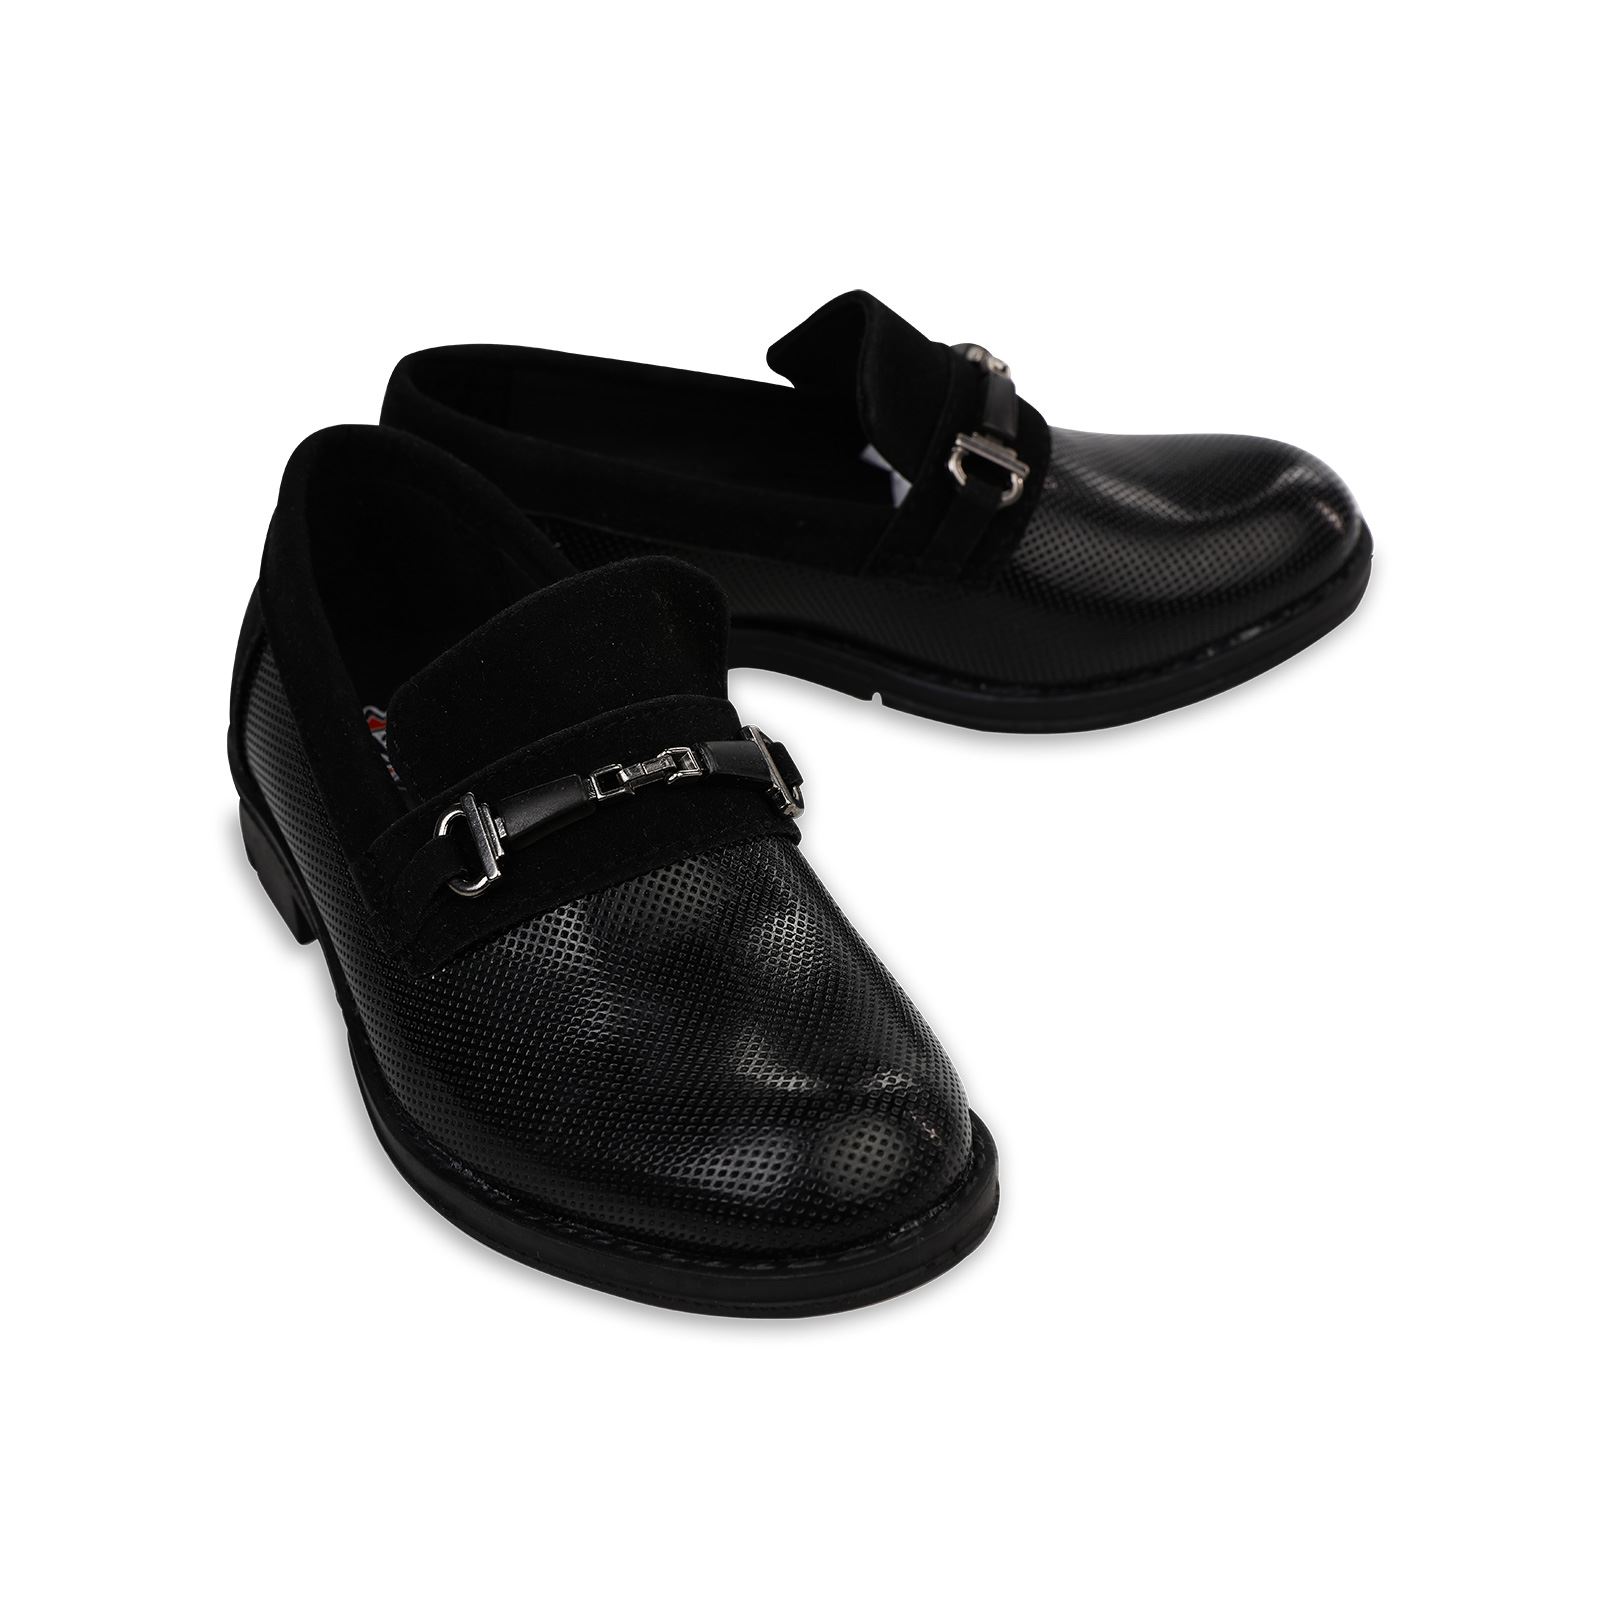 Harli Erkek Çocuk Kemer Detaylı Klasik Ayakkabı 26-30 Numara Siyah